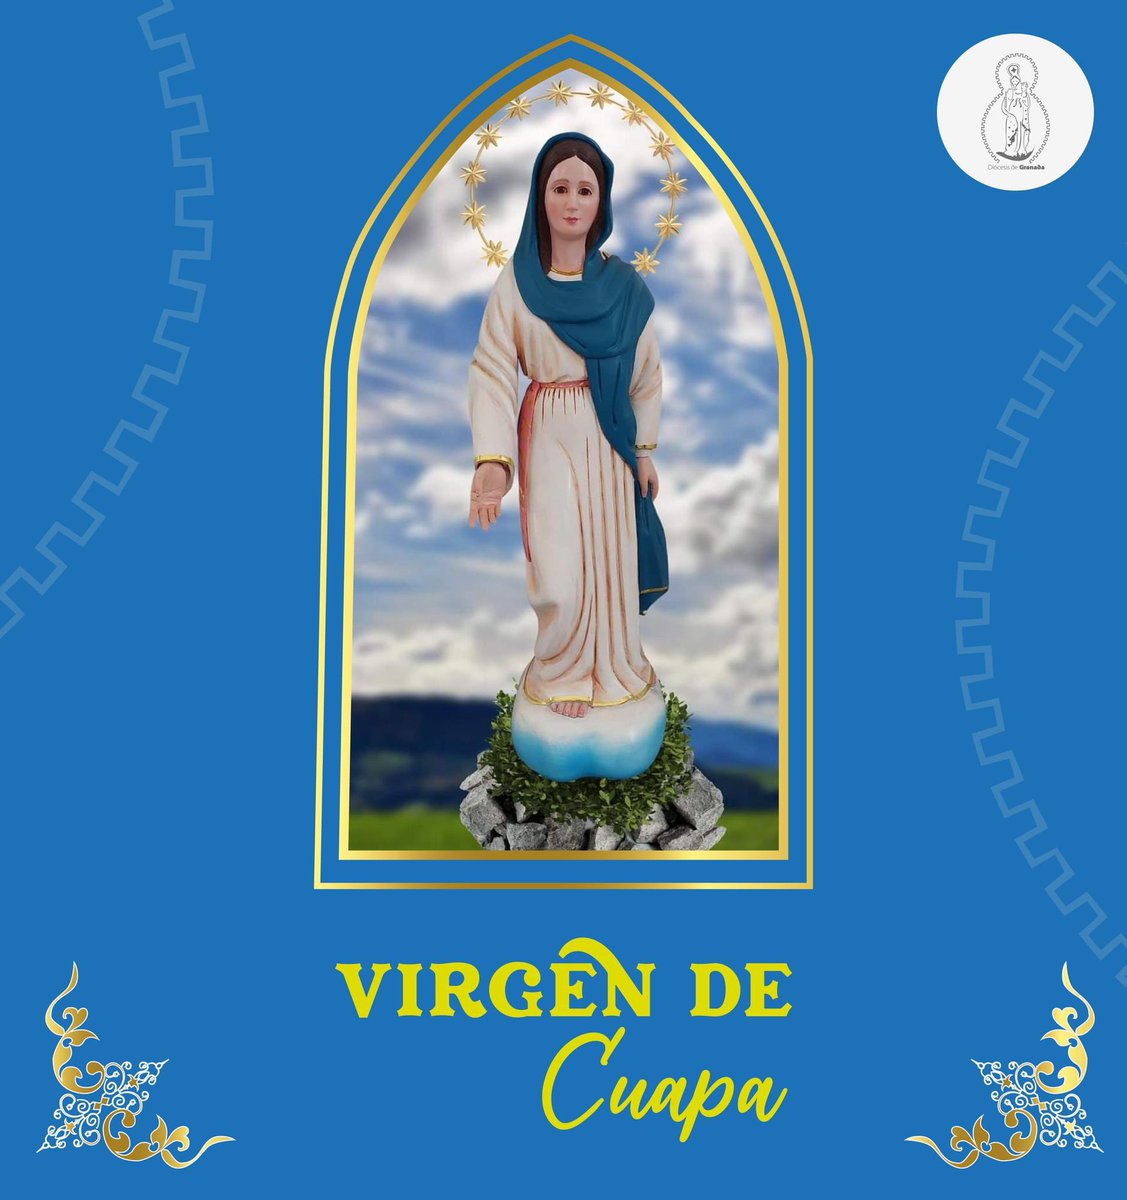 Recordamos el 44 Aniversario de las apariciones de la Virgen de Cuapa. ¿Quién es la más guapa?

#MayoMarianoDiocGranada #CaminandoJuntosDiocGranada